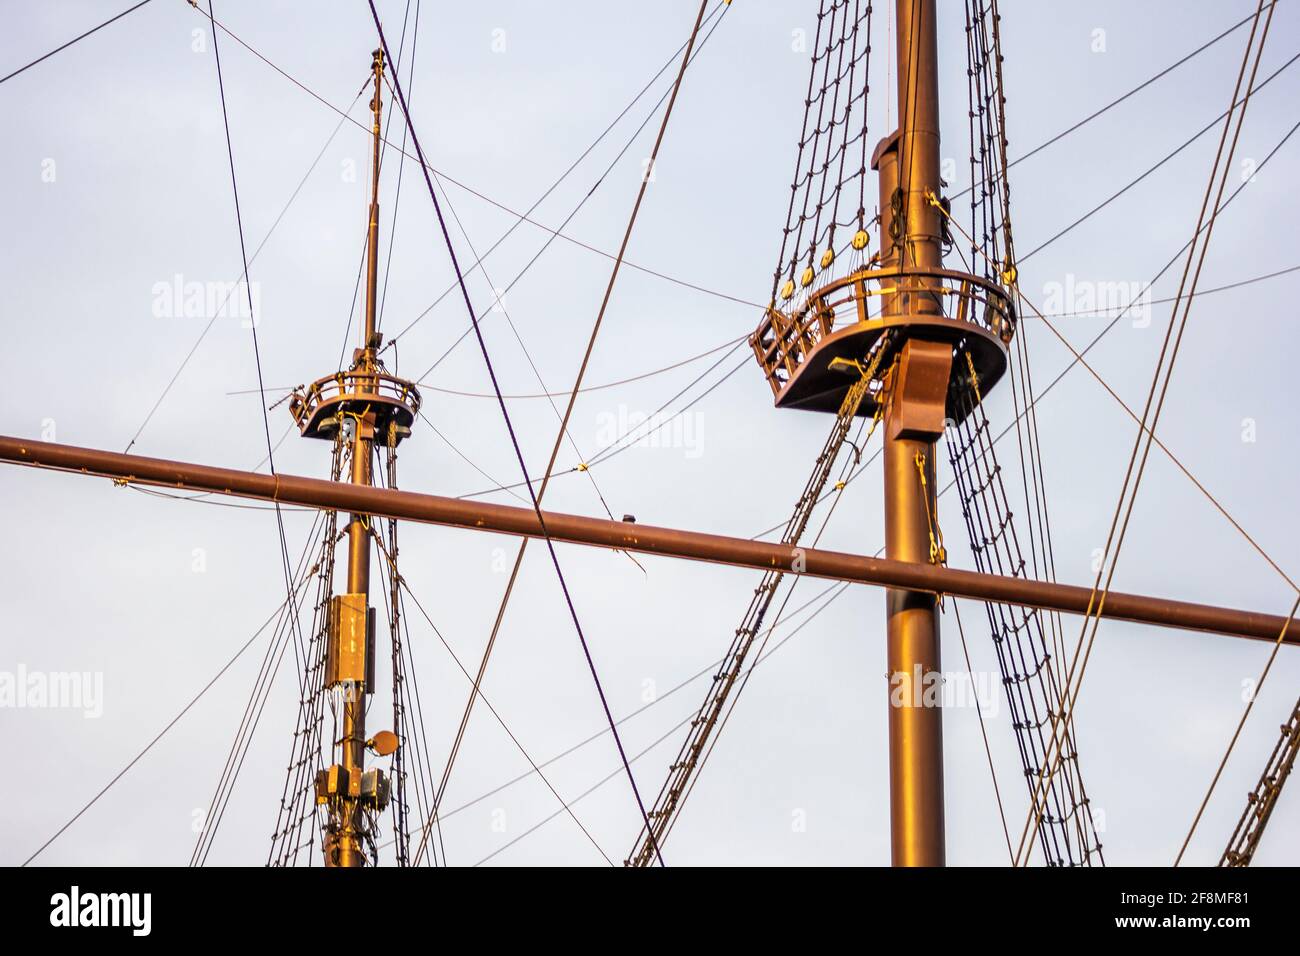 Système de voiles sur navire néerlandais du XVIIe siècle.concept histoire navigation marine Banque D'Images